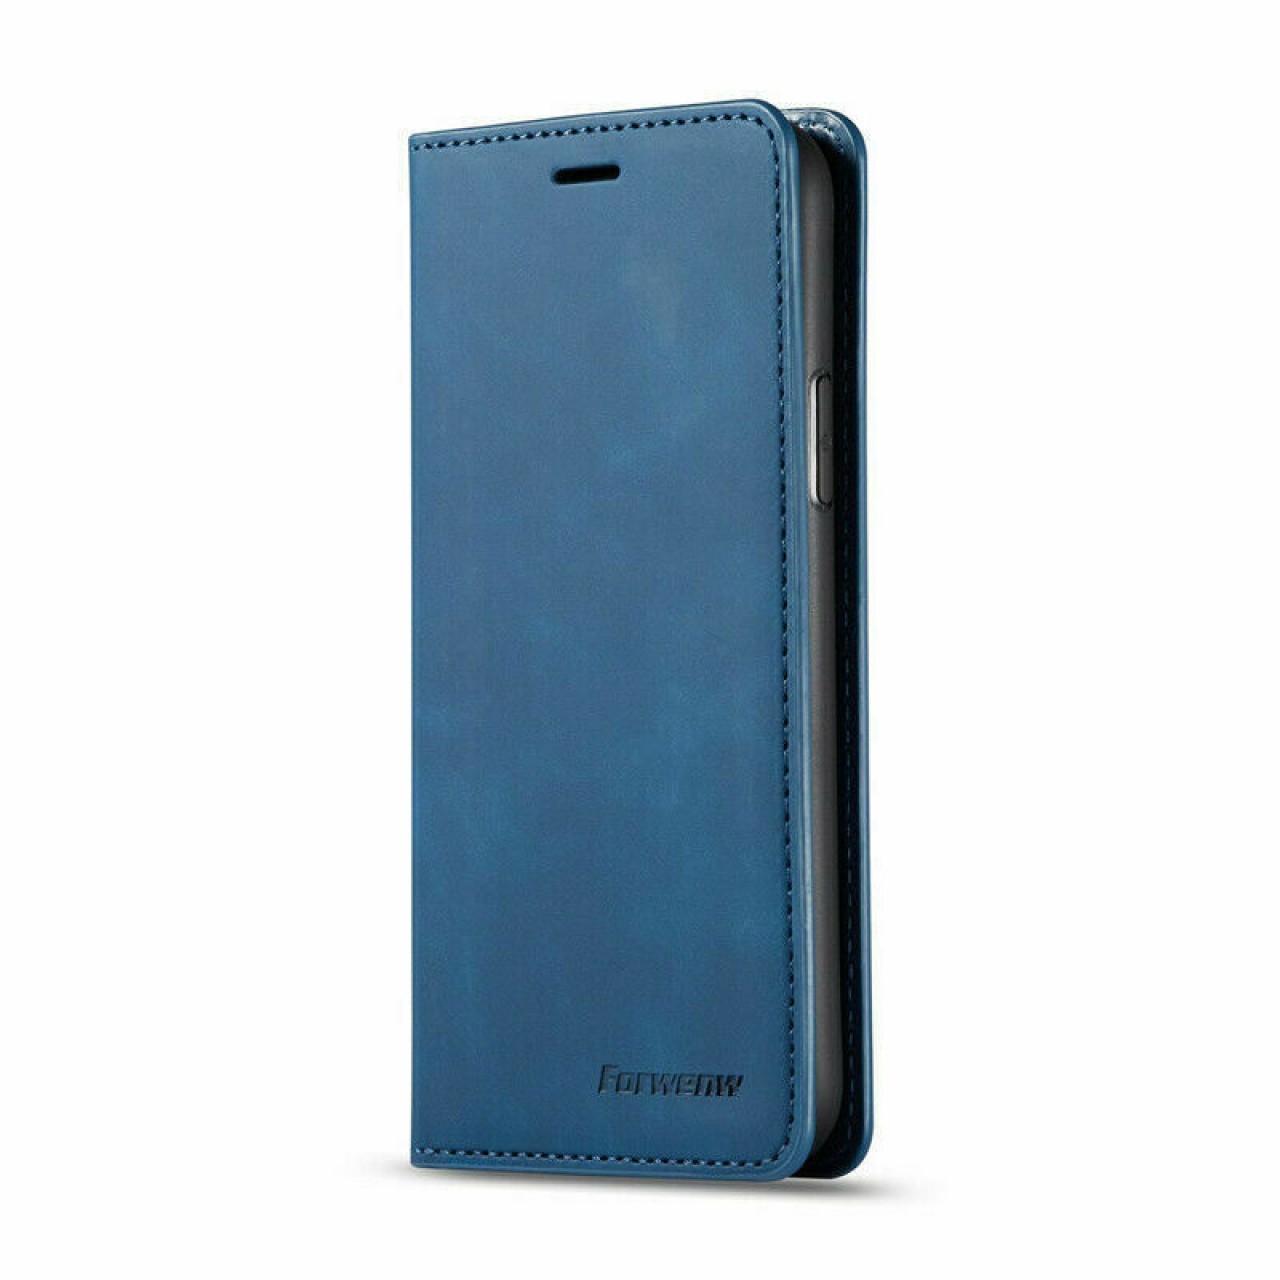 Δερματίνη Θήκη Προστασίας  Τύπου Πορτοφόλι για  Redmi Note 9 μπλε -Forwenw